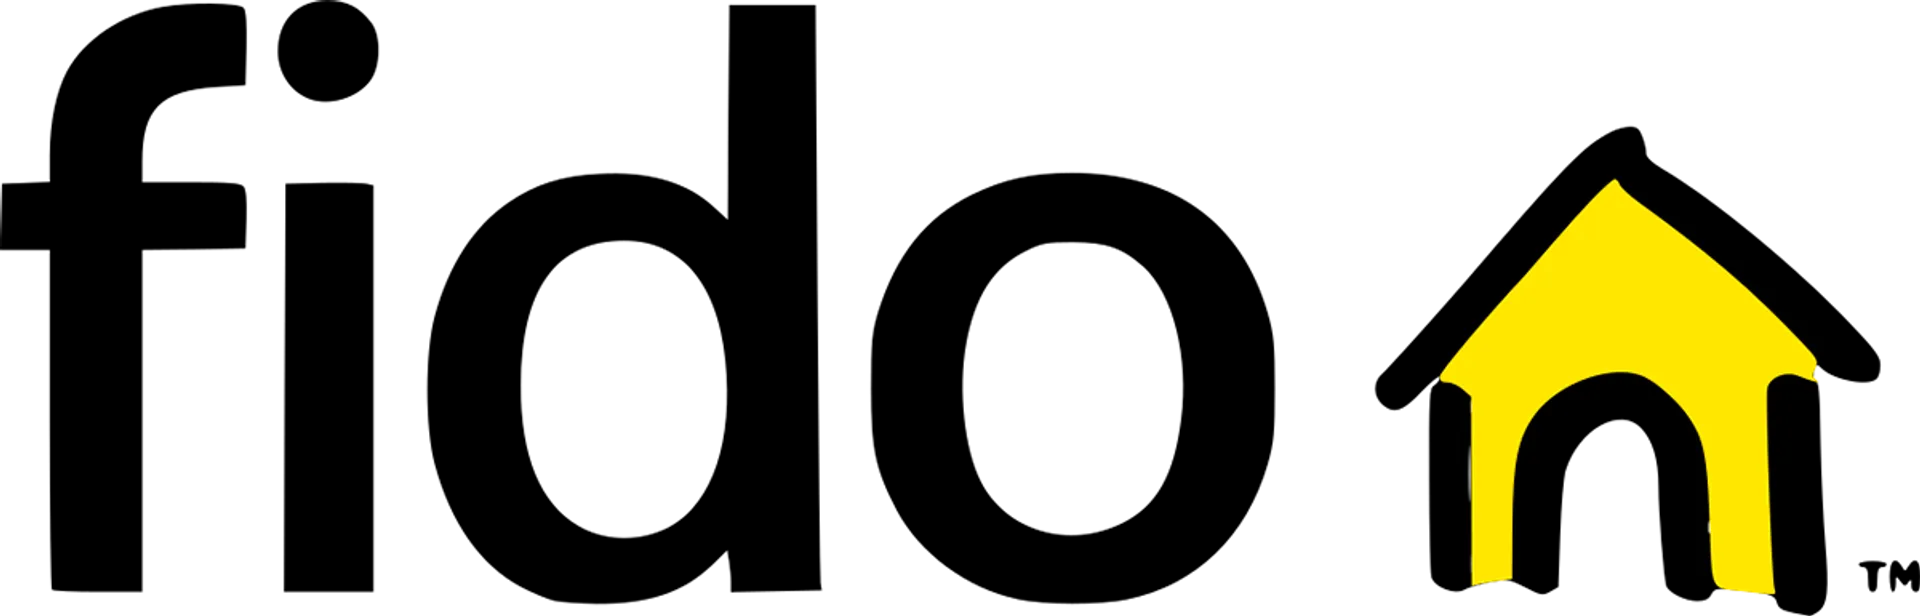 FIDO logo de circulaires